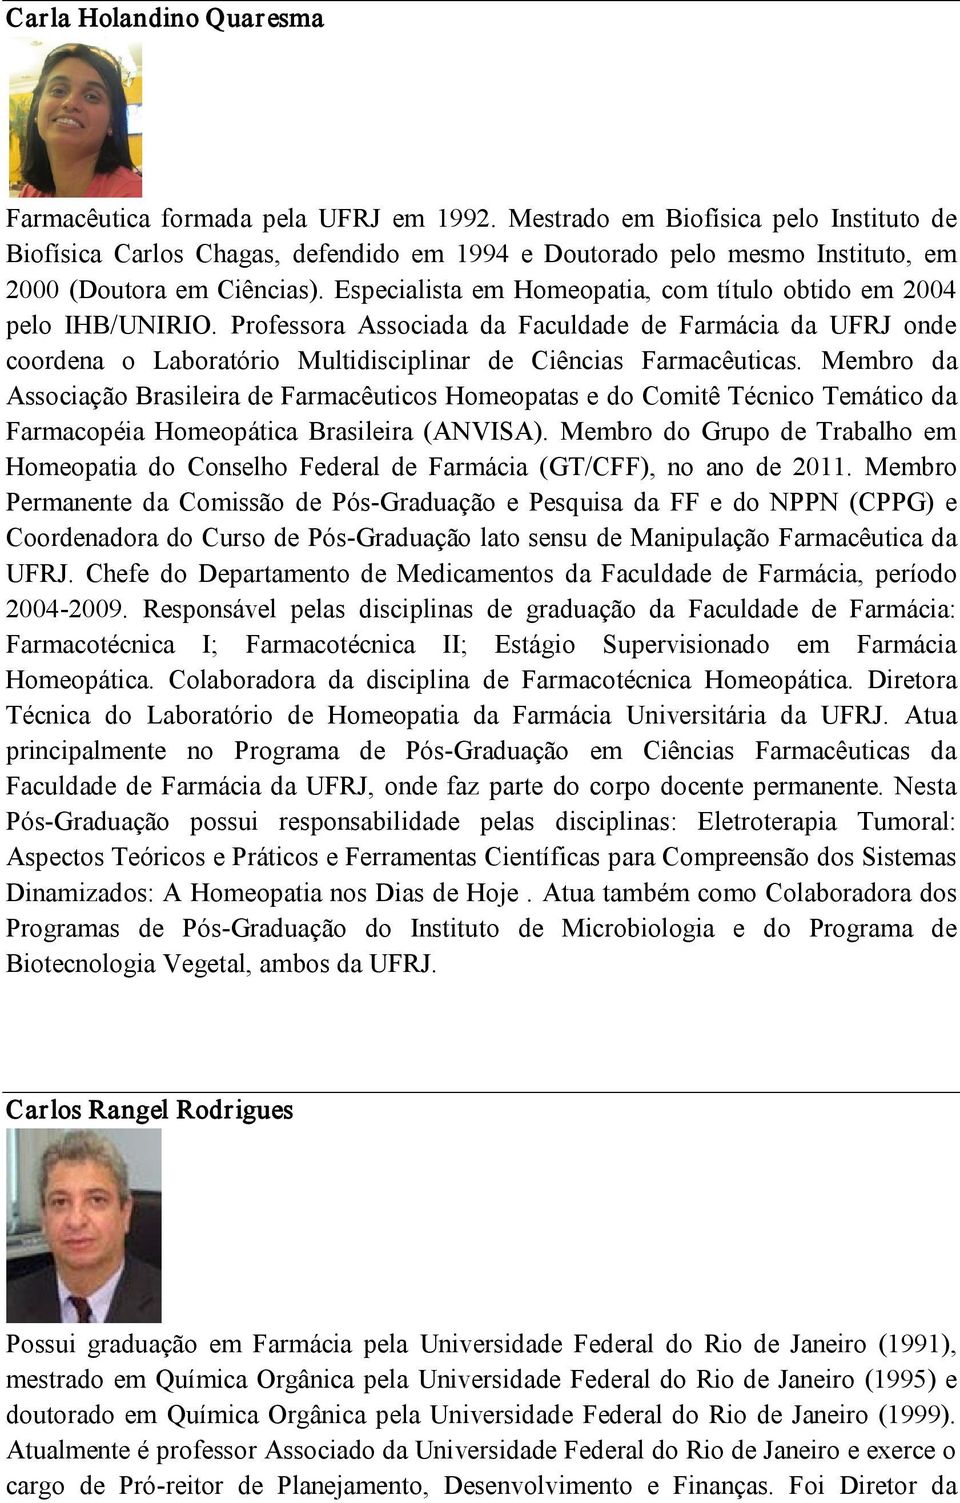 Especialista em Homeopatia, com título obtido em 2004 pelo IHB/UNIRIO. Professora Associada da Faculdade de Farmácia da UFRJ onde coordena o Laboratório Multidisciplinar de Ciências Farmacêuticas.